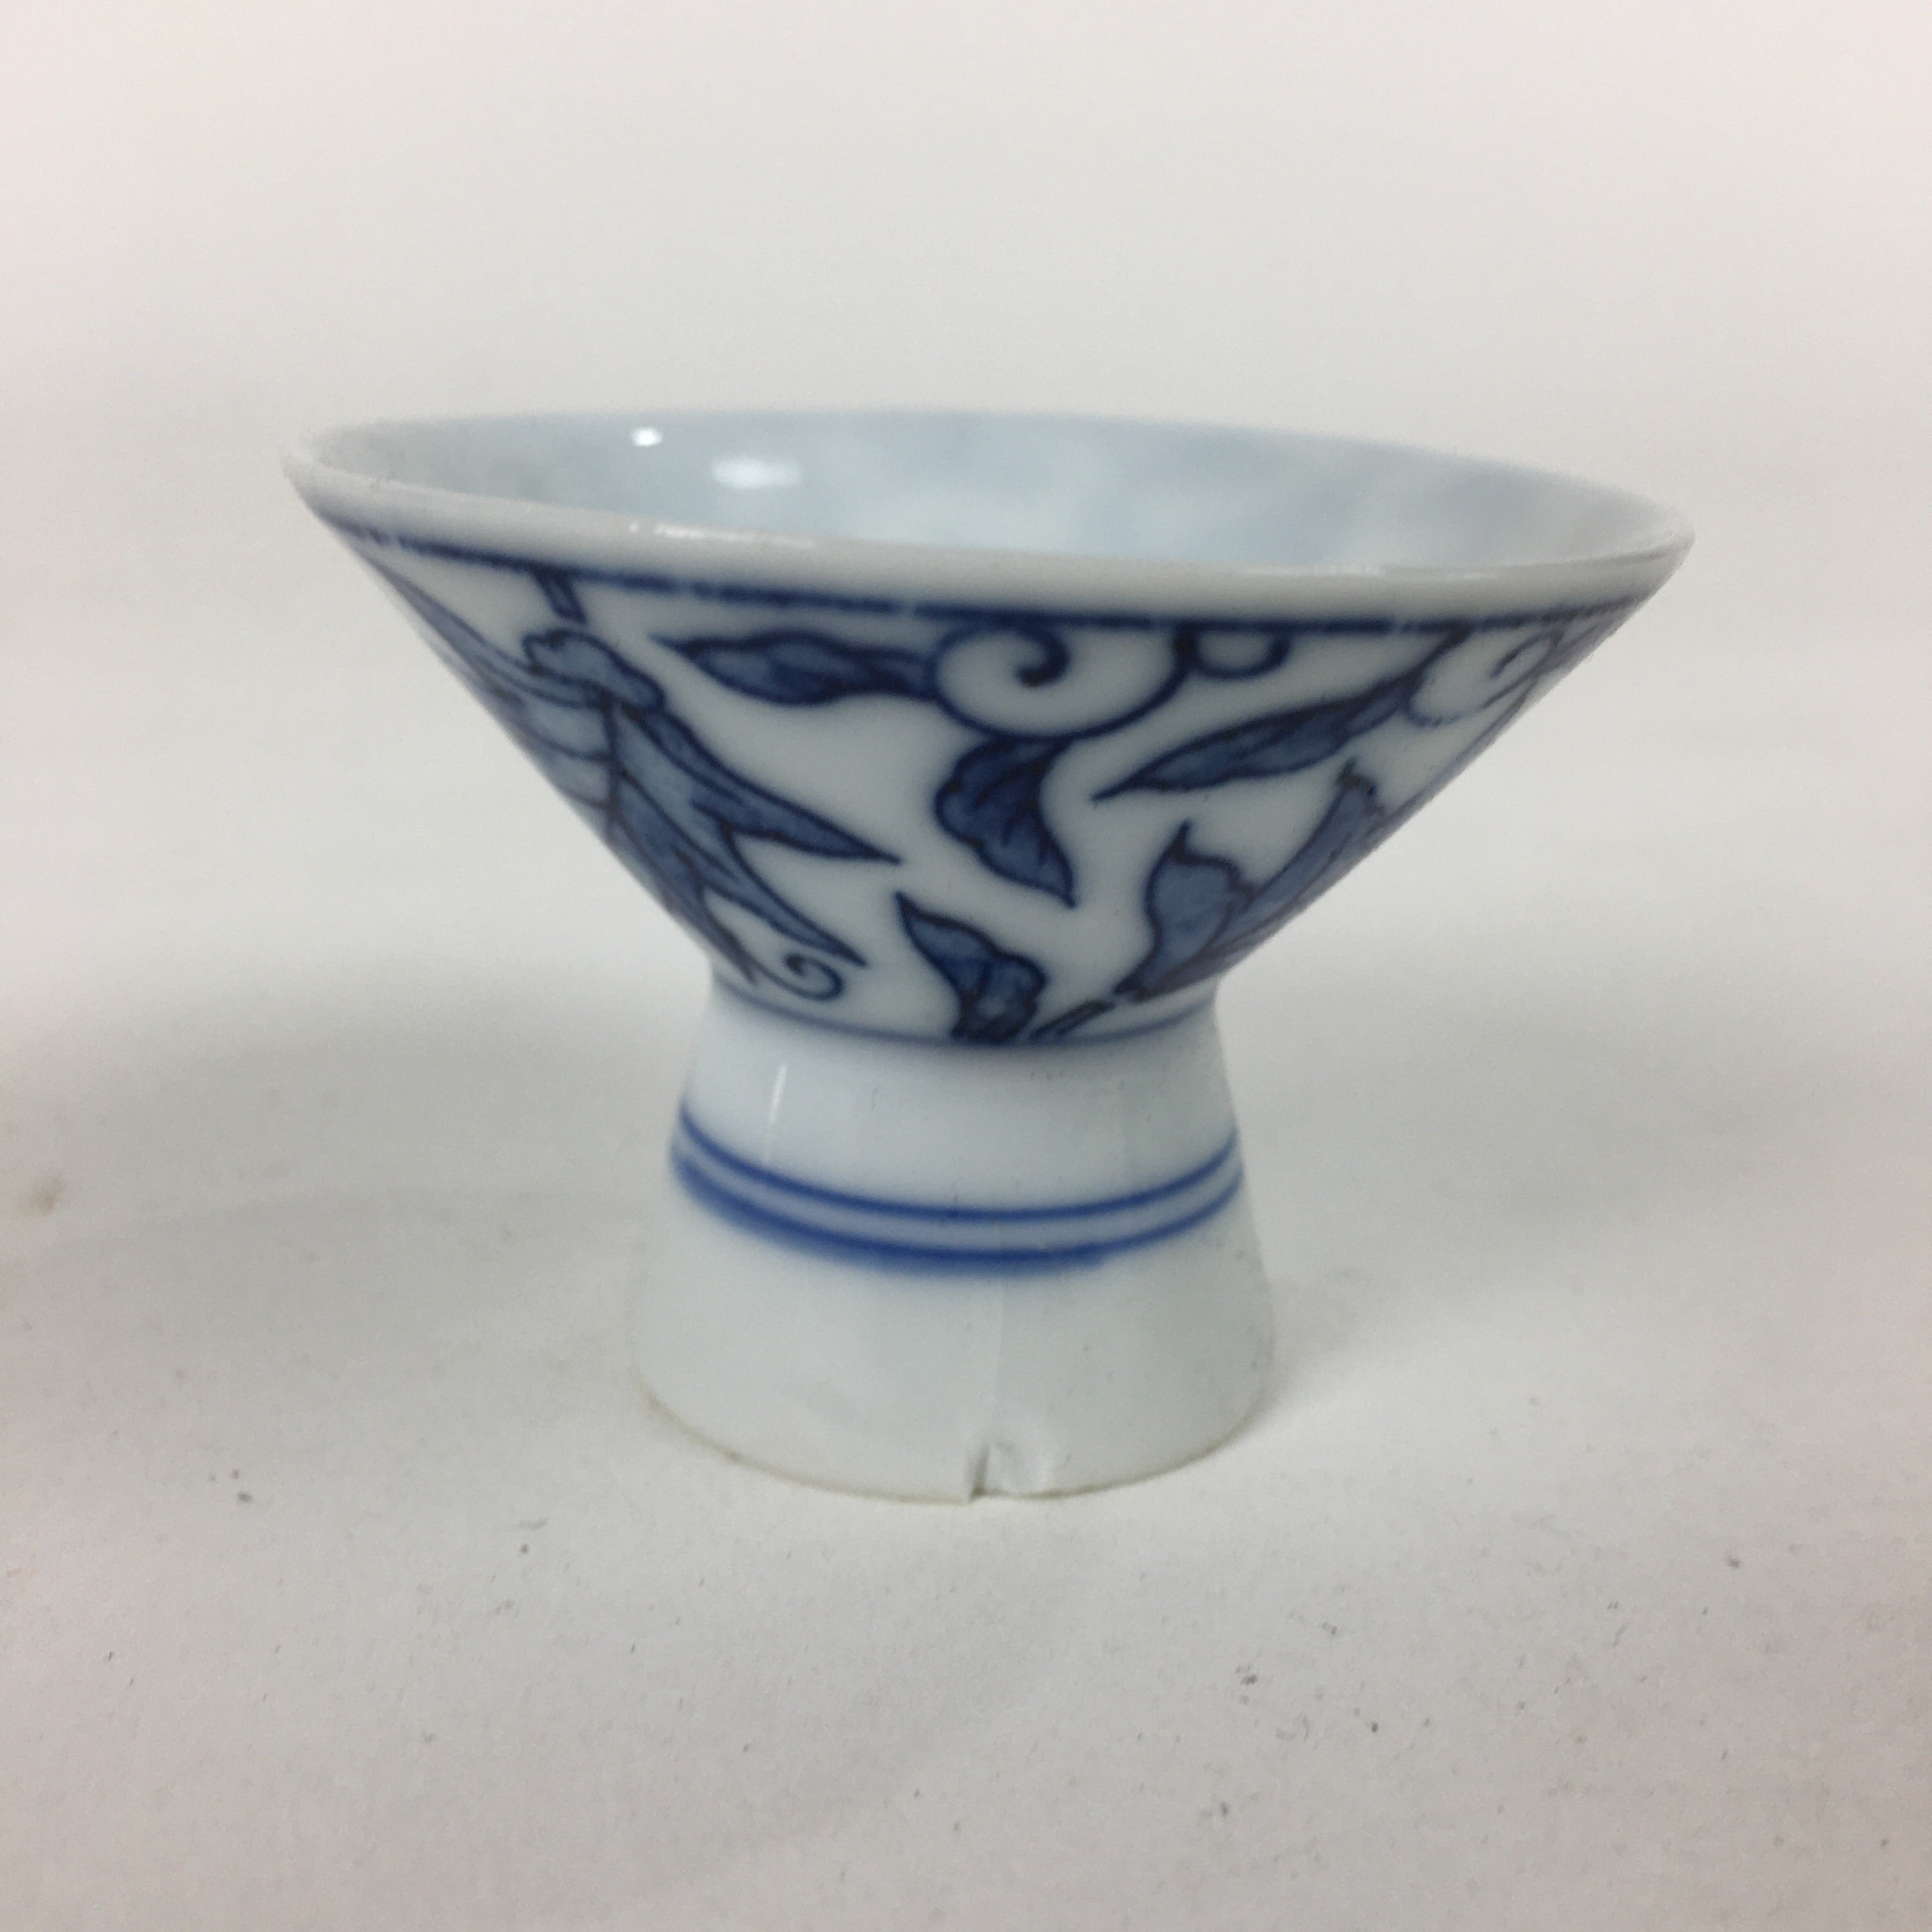 Japanese Porcelain Sake Cup Vtg Leaves Kohai Guinomi Ochoko Sakazuki G42